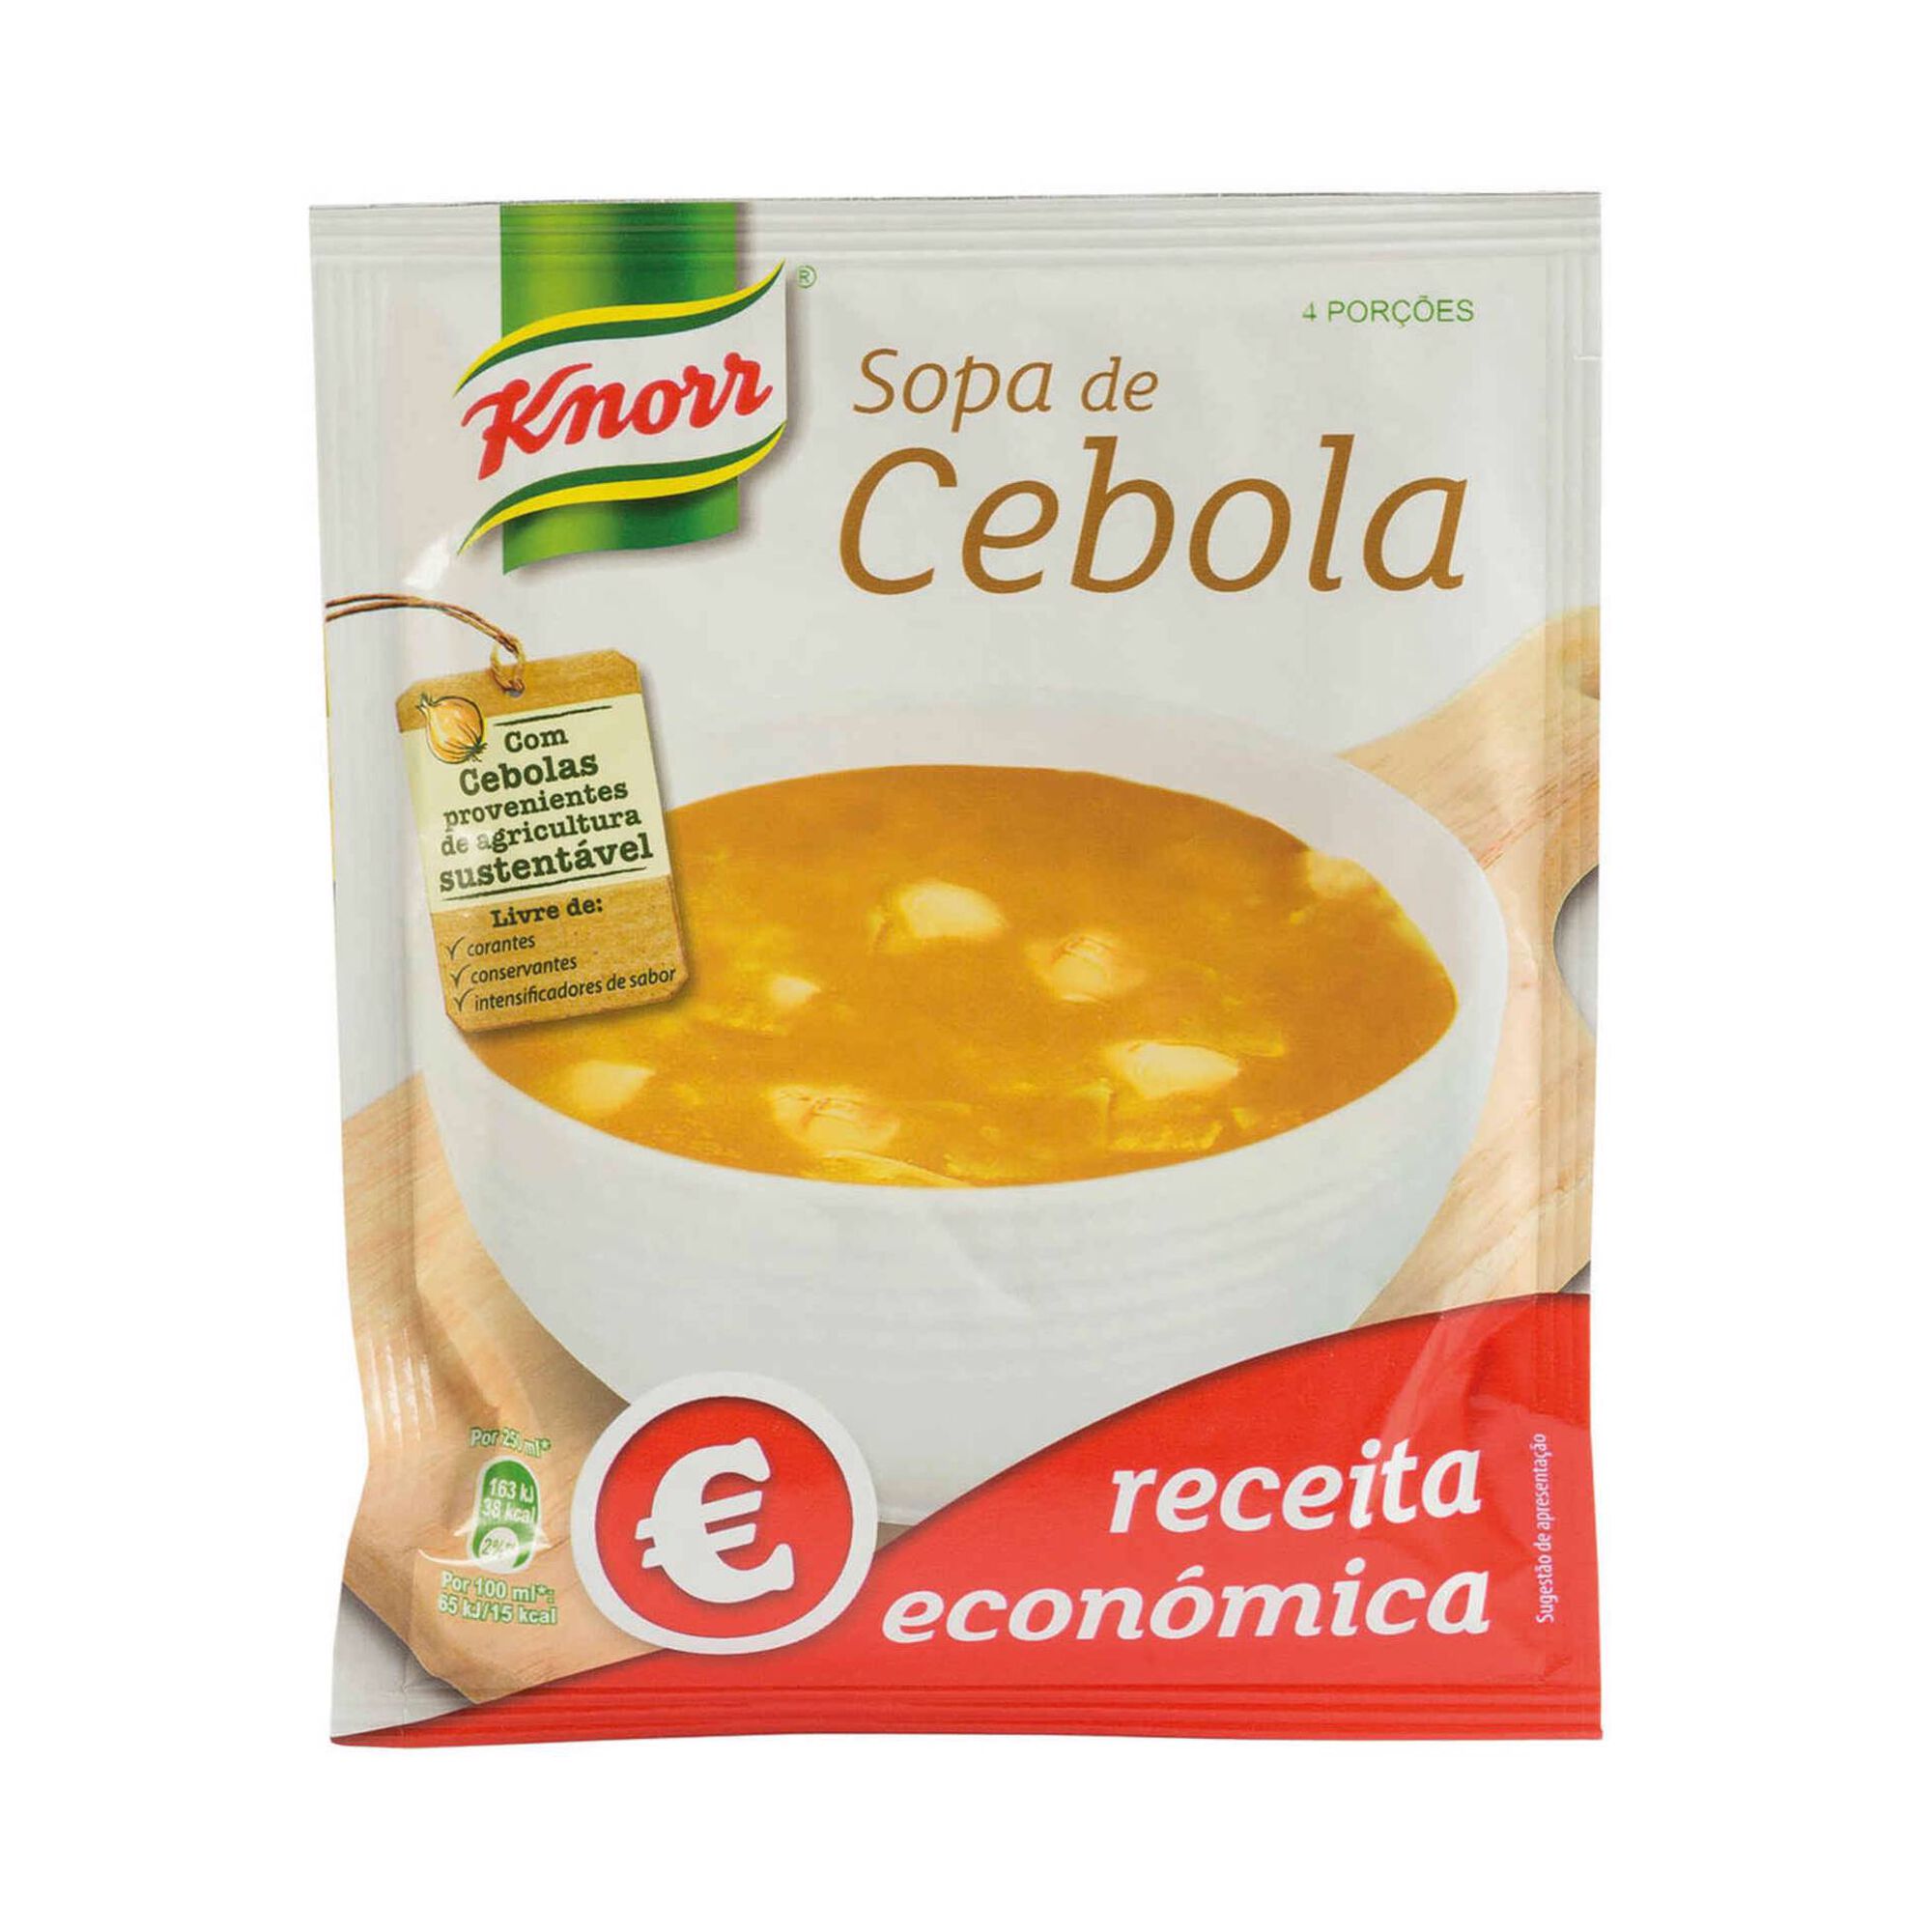 Sopa de Cebola